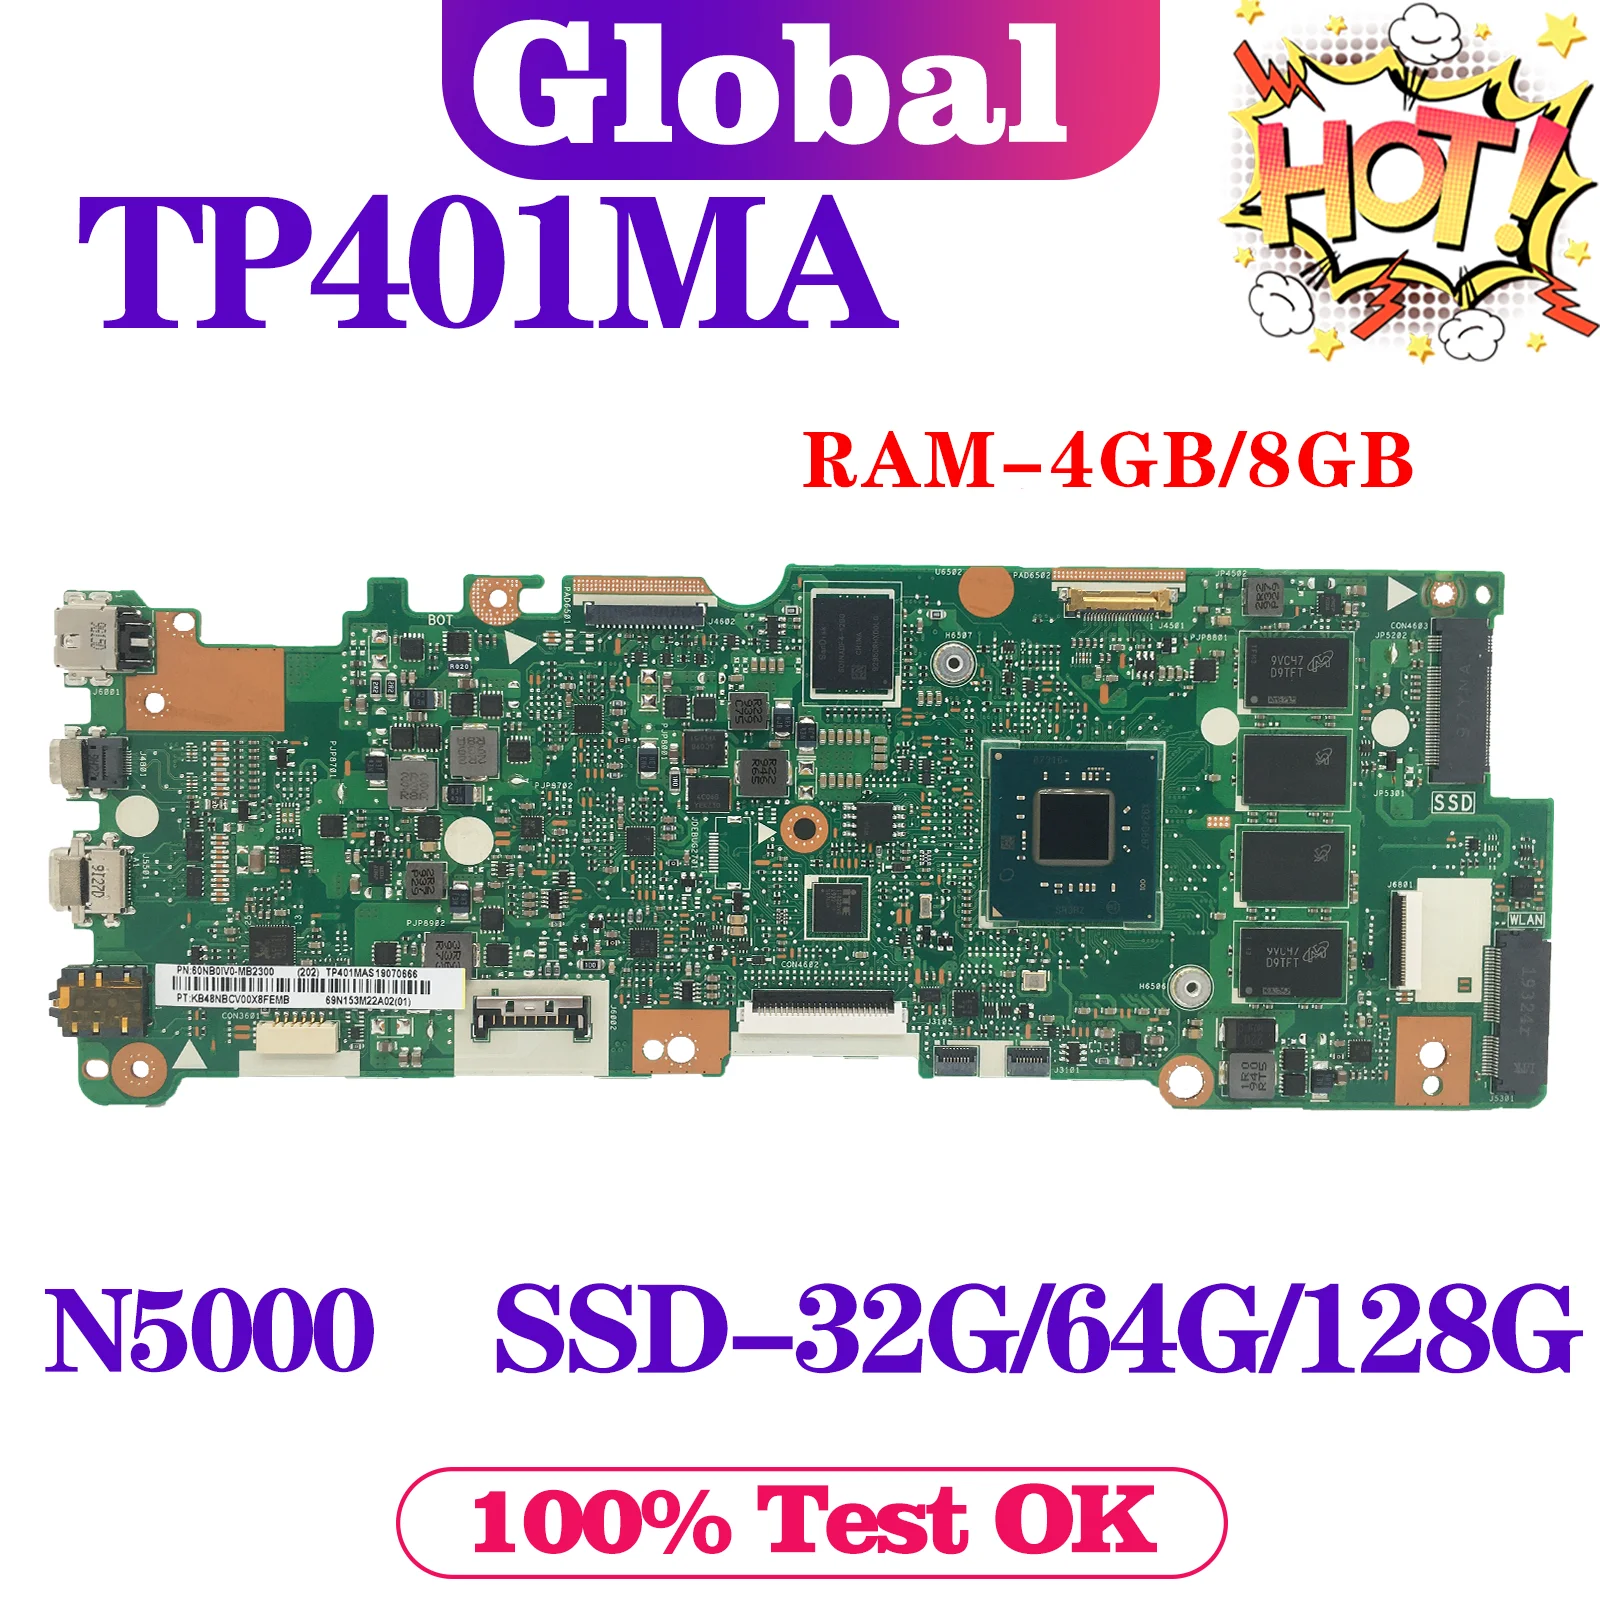 KEFU Mainboard TP401MA TP401MAS TP401MARB TP401MAR R406MA J401MA Laptop Motherboard N5000 4GB/8GB-RAM SSD-32G/64G/128G